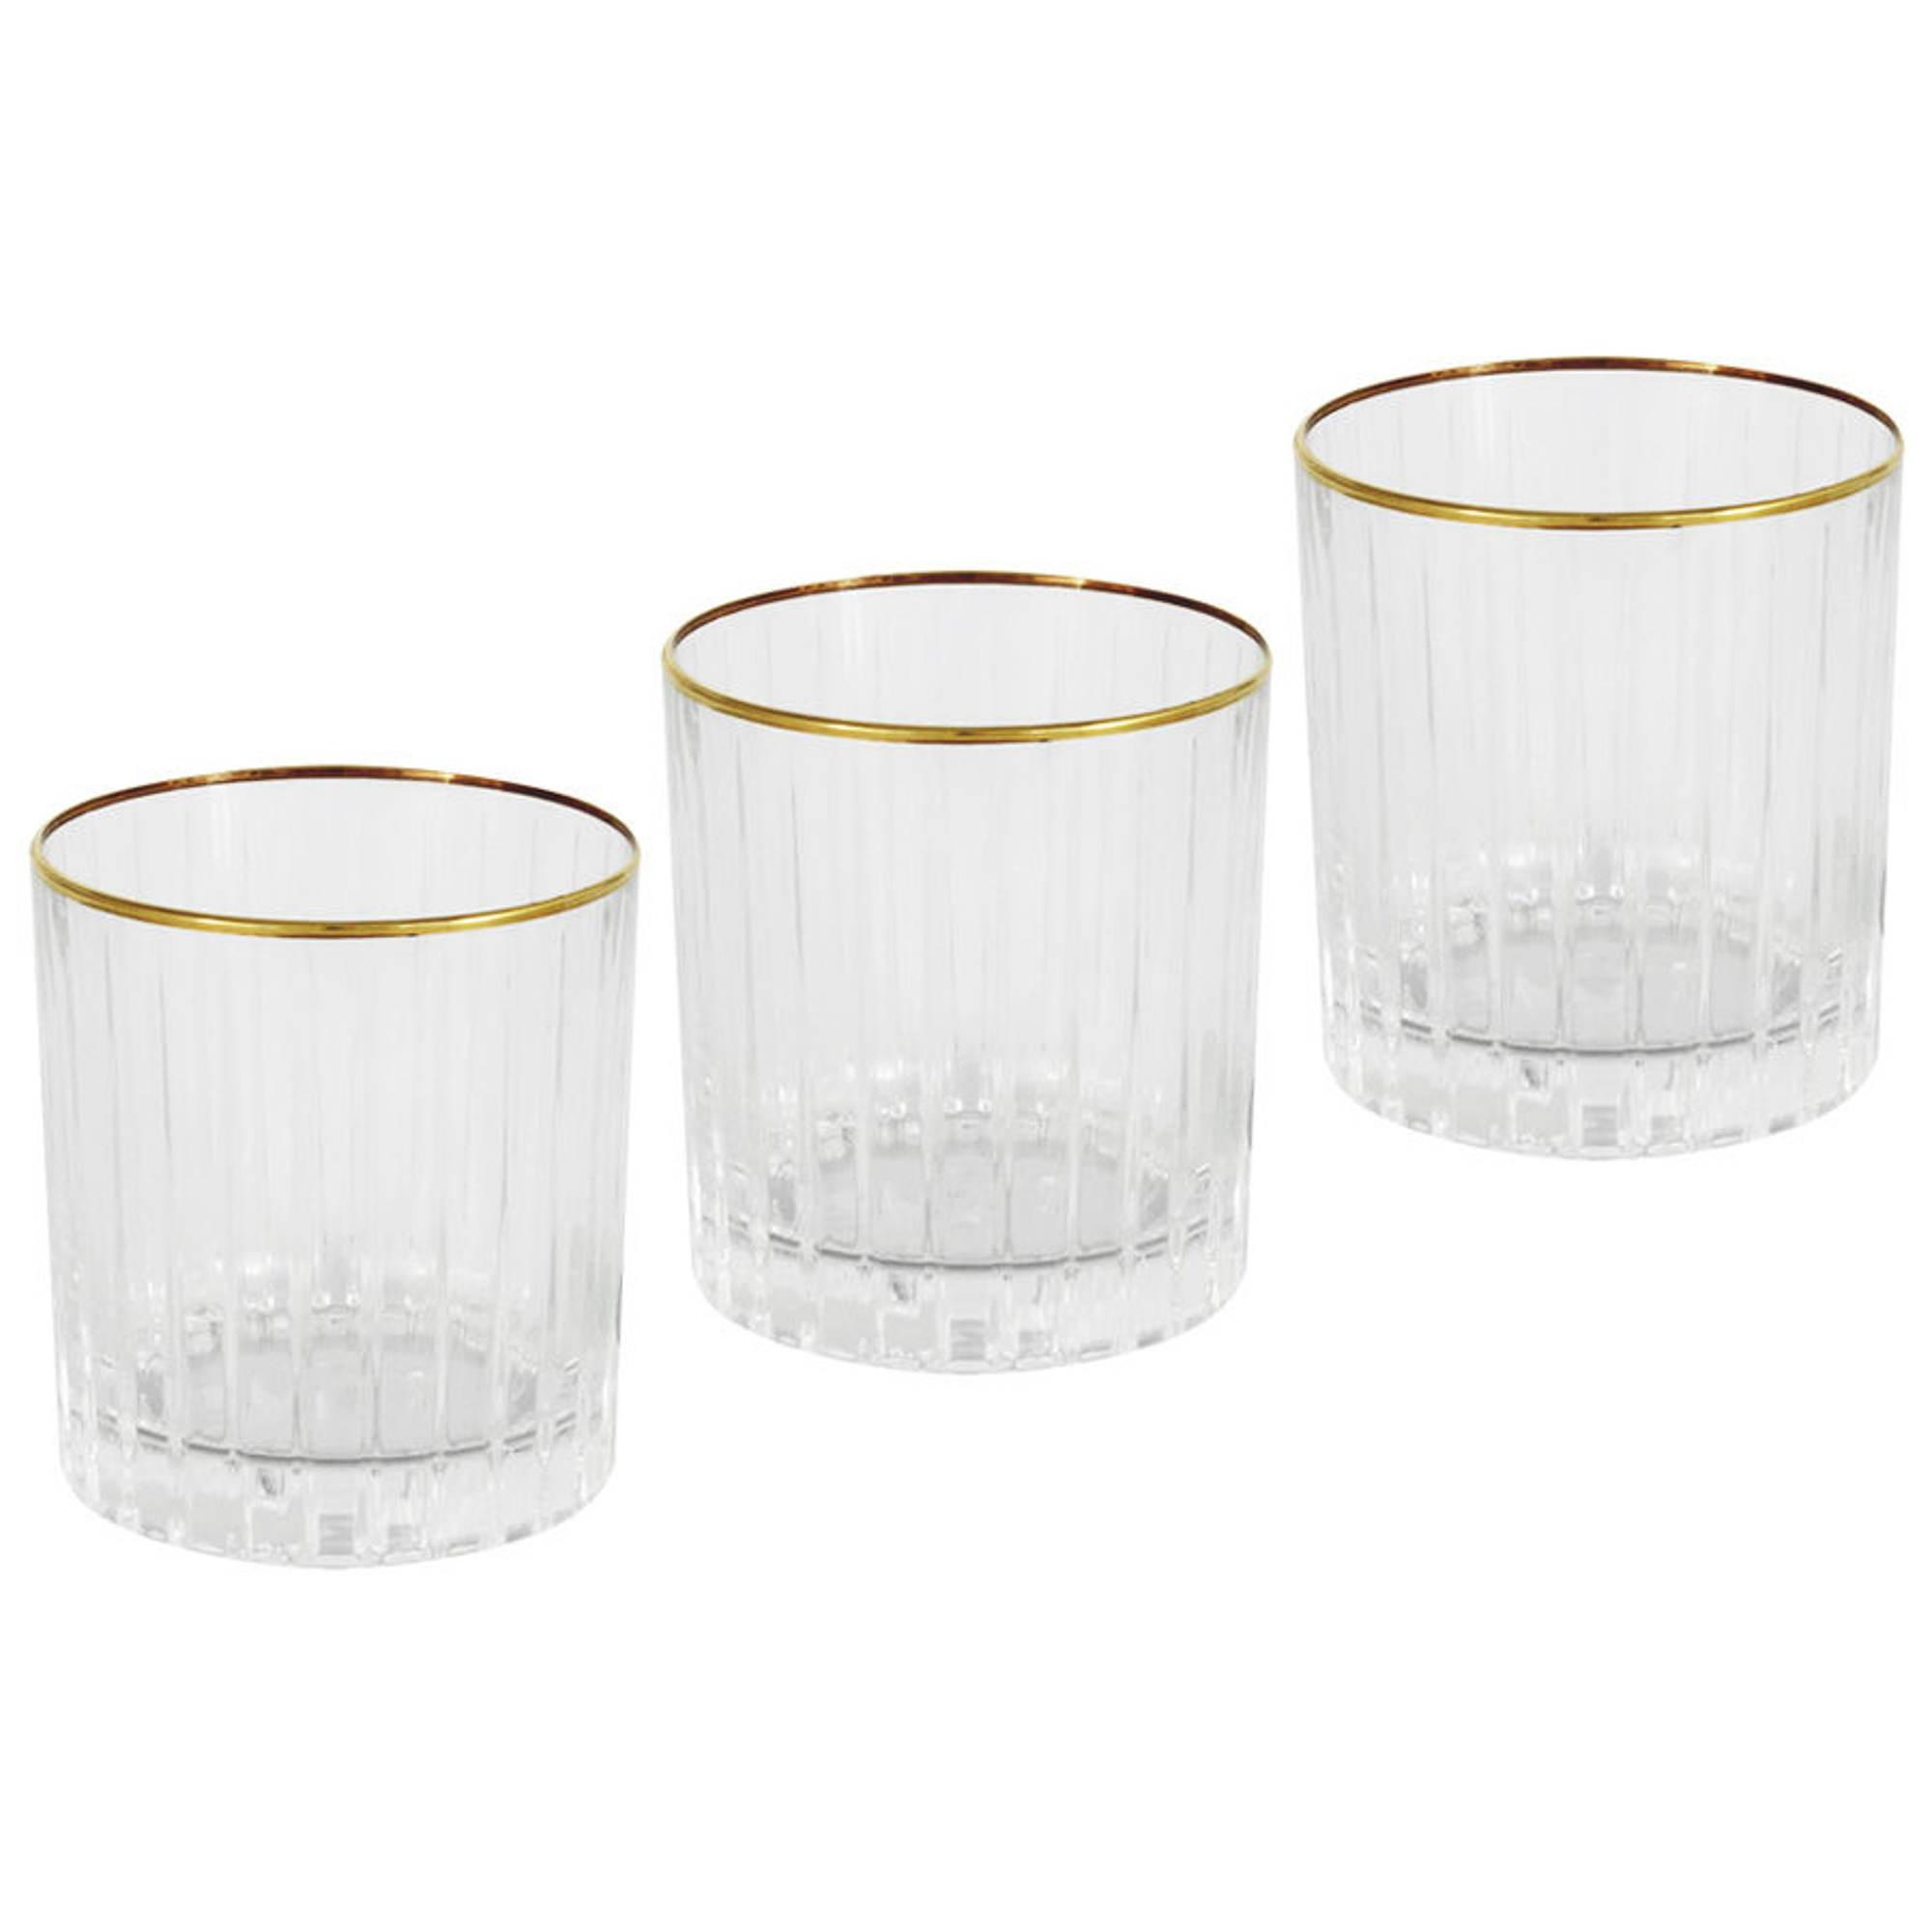 Набор стаканов Same Пиза золото для виски 250 мл 6 шт набор стаканов для виски crystal bohemia flat 280 мл 6 шт